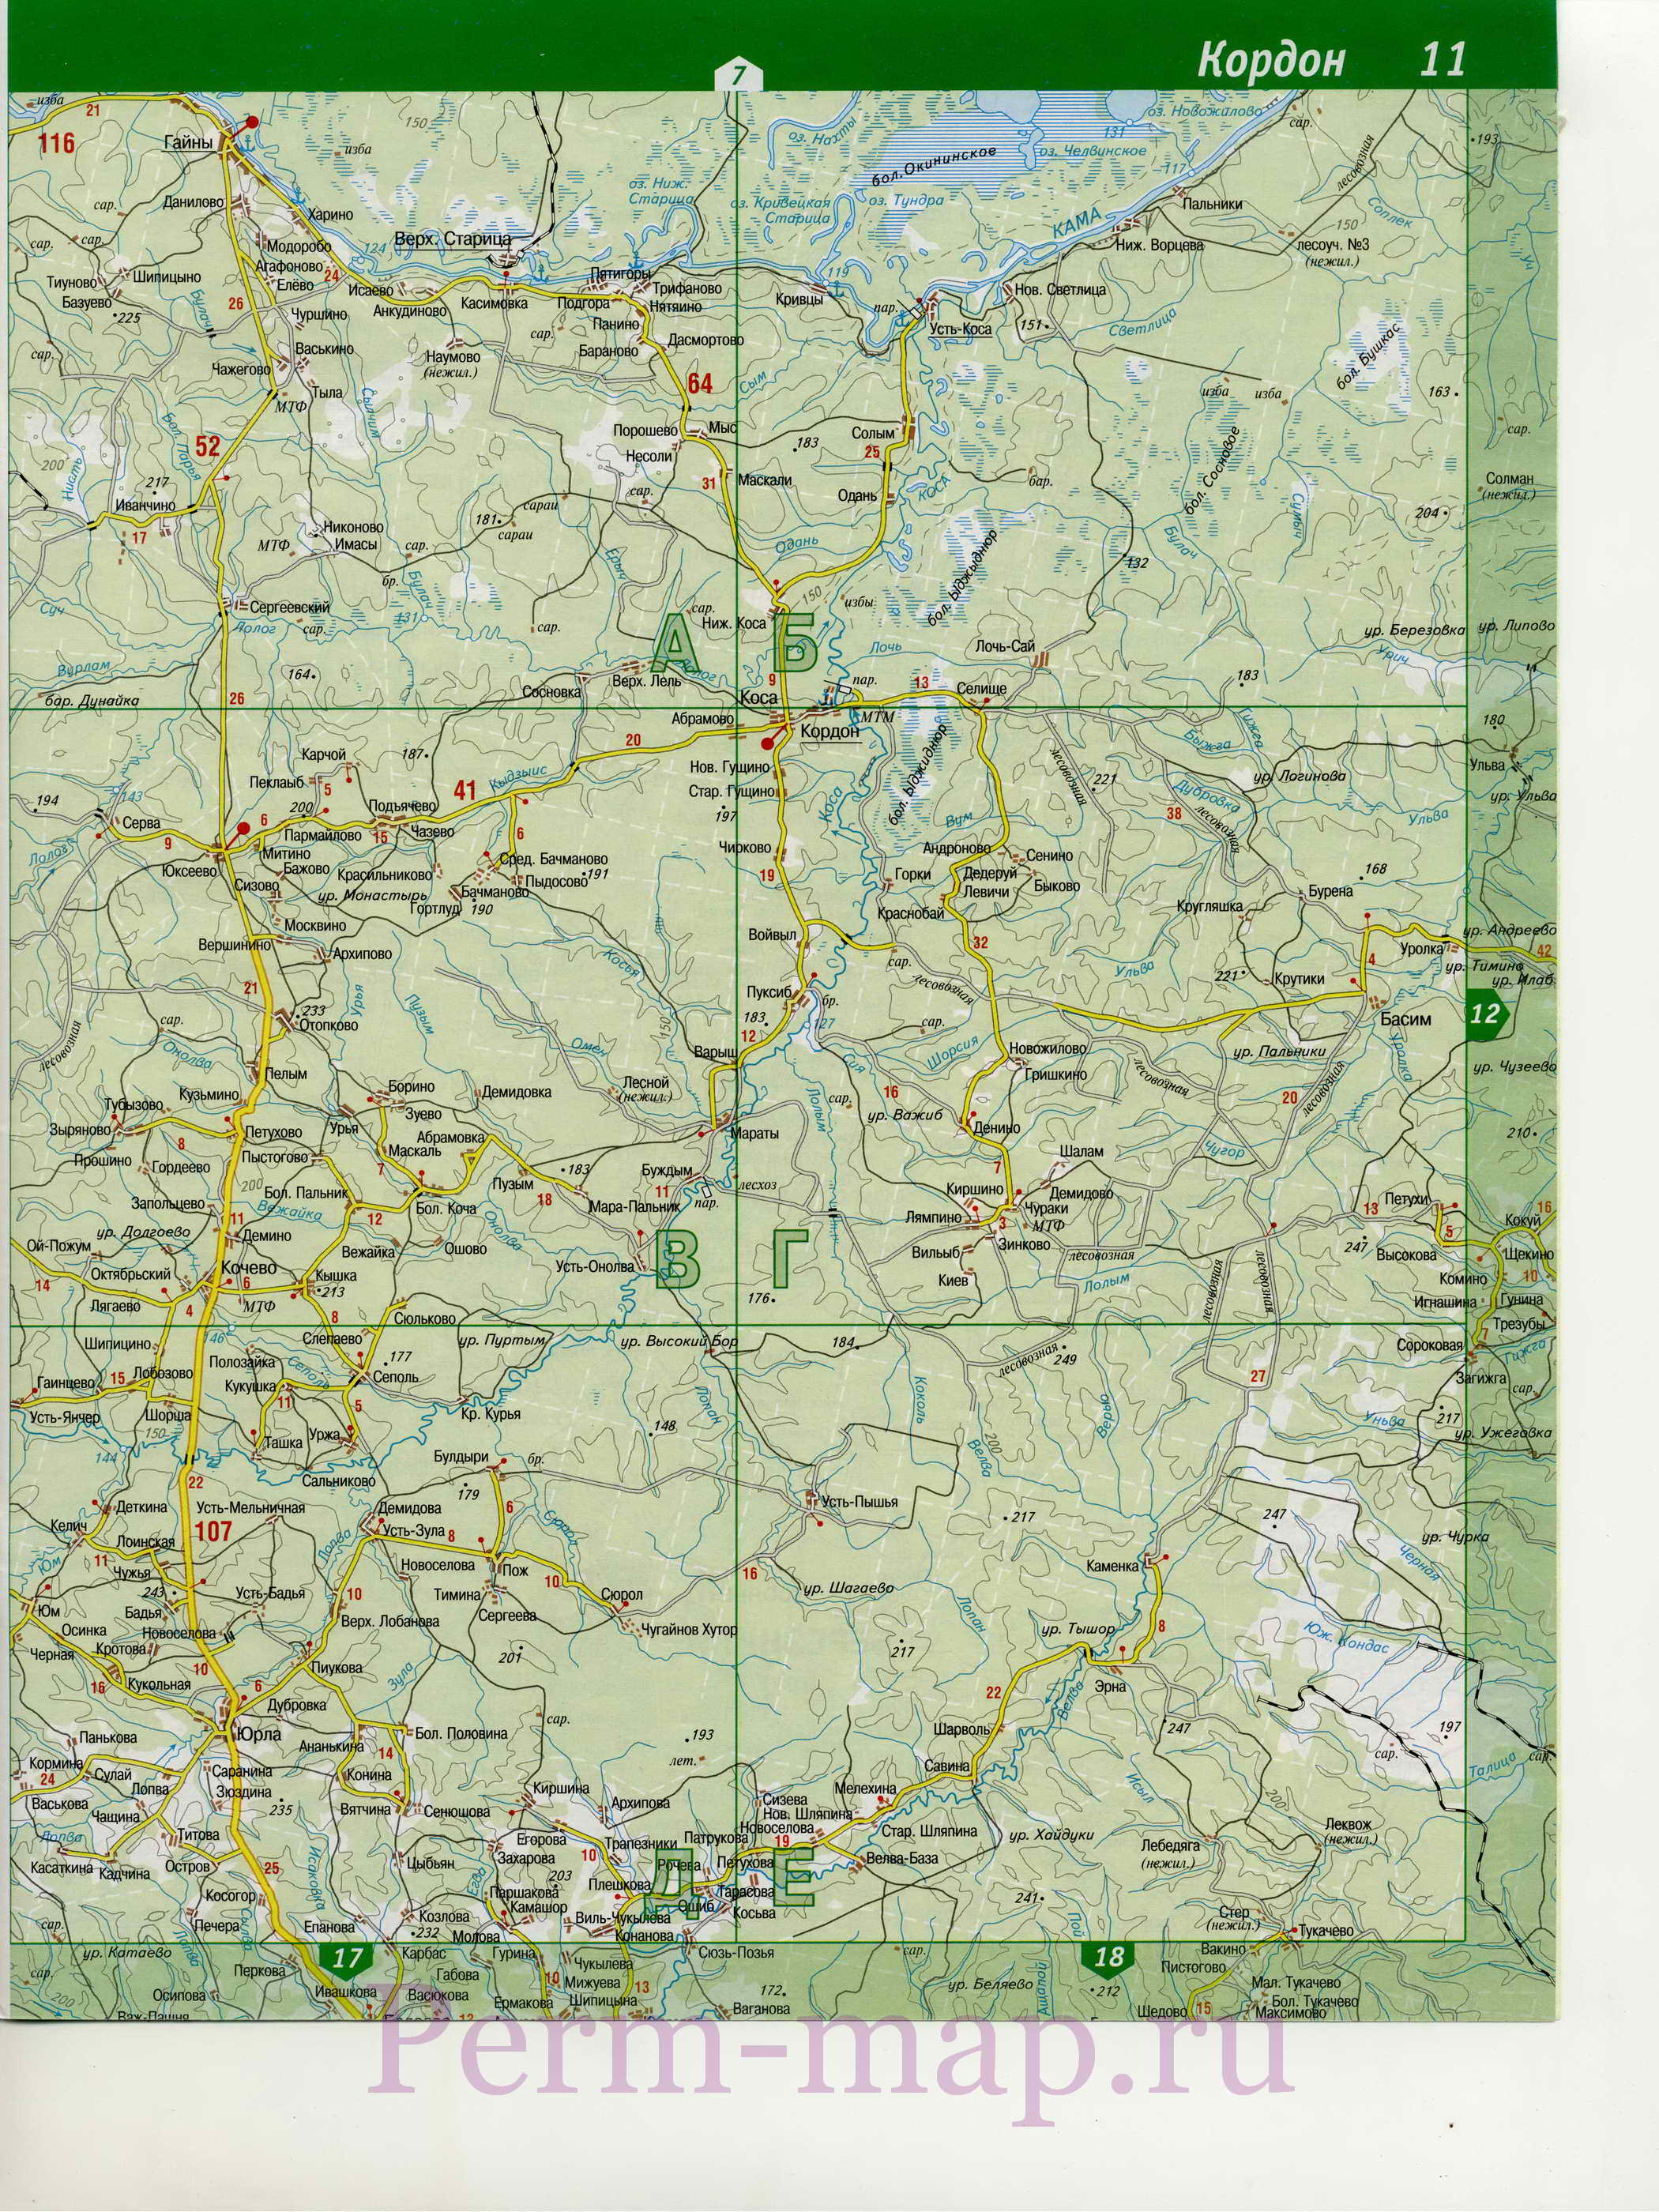 Юрлинский муниципальный район - карта, B0 - 